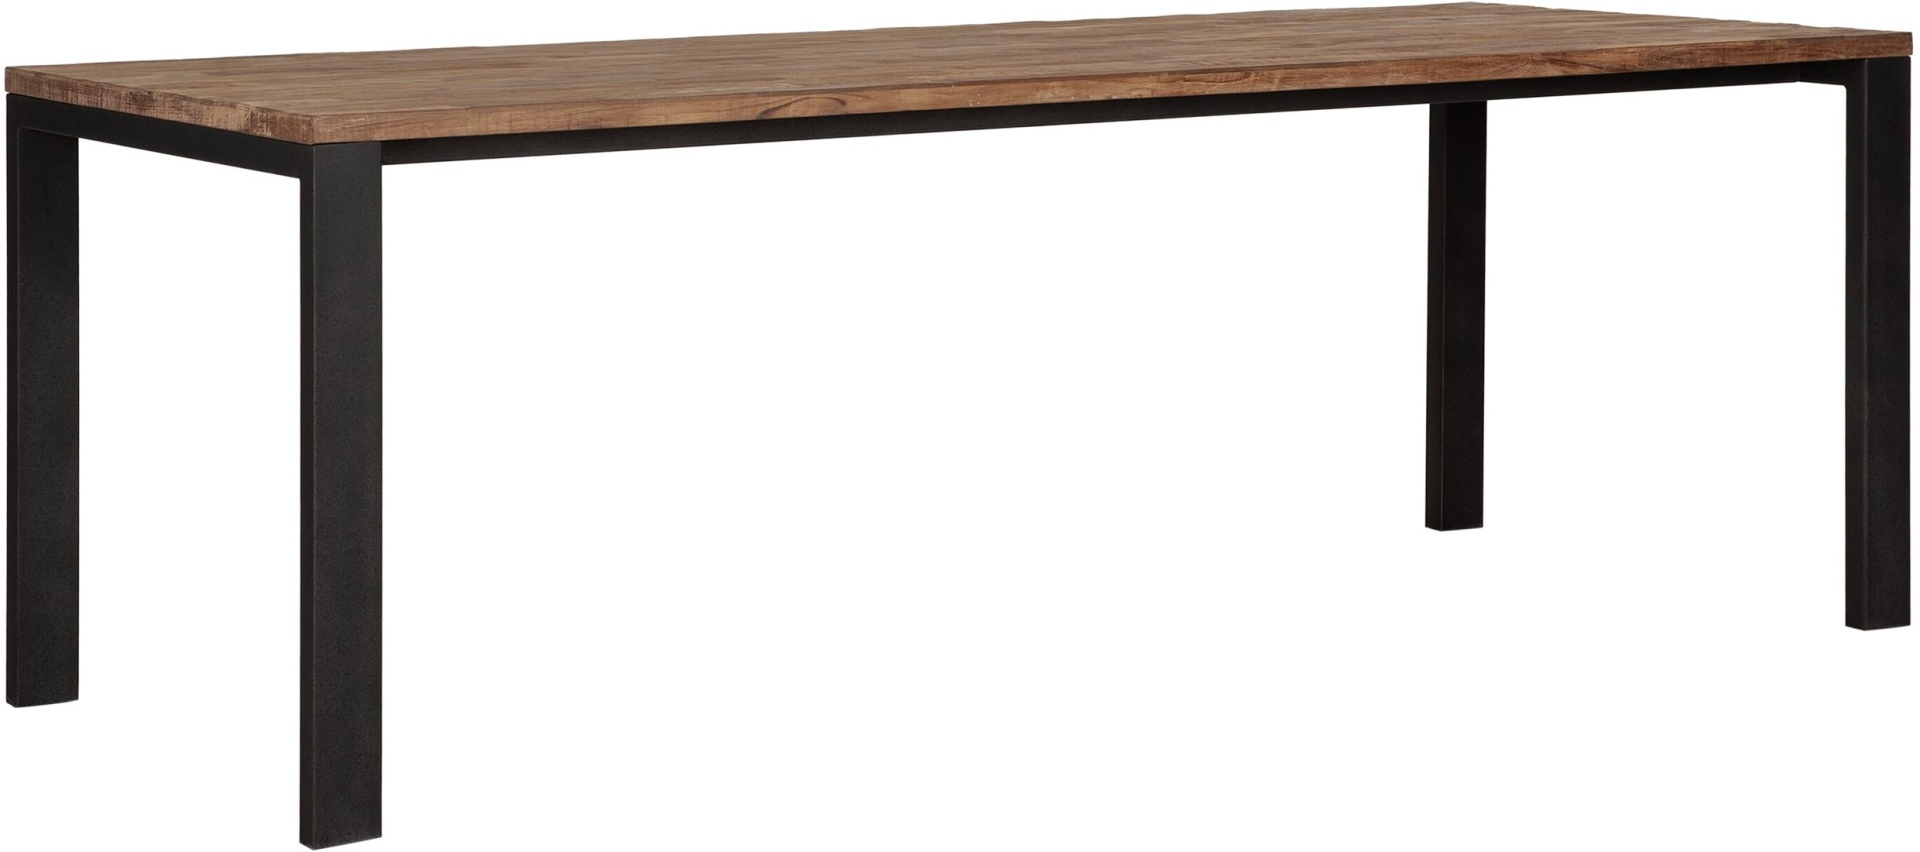 Der Esstisch Track überzeugt mit seinem modern und schlichtem Design. Gefertigt wurde der Tisch aus recyceltem Teakholz, welches einen natürlichen Farbton besitzt. Das Gestell ist aus Metall und ist Schwarz. Der Tisch hat eine Länge von 225 cm und eine Pl